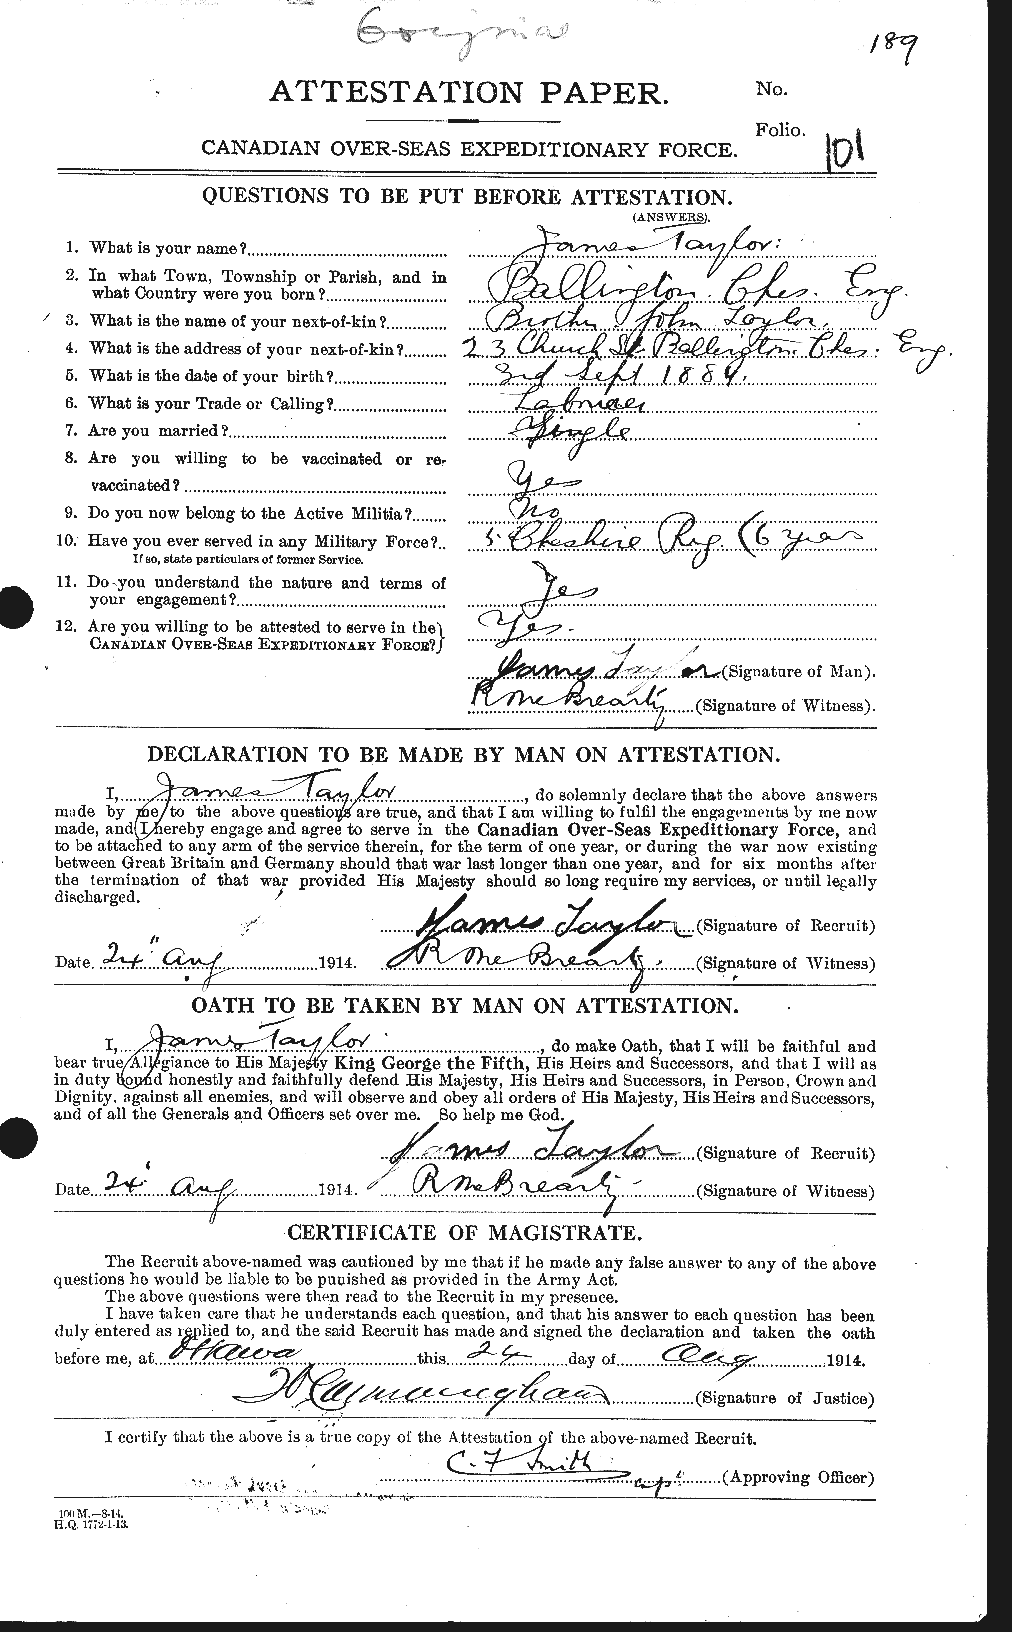 Dossiers du Personnel de la Première Guerre mondiale - CEC 626896a